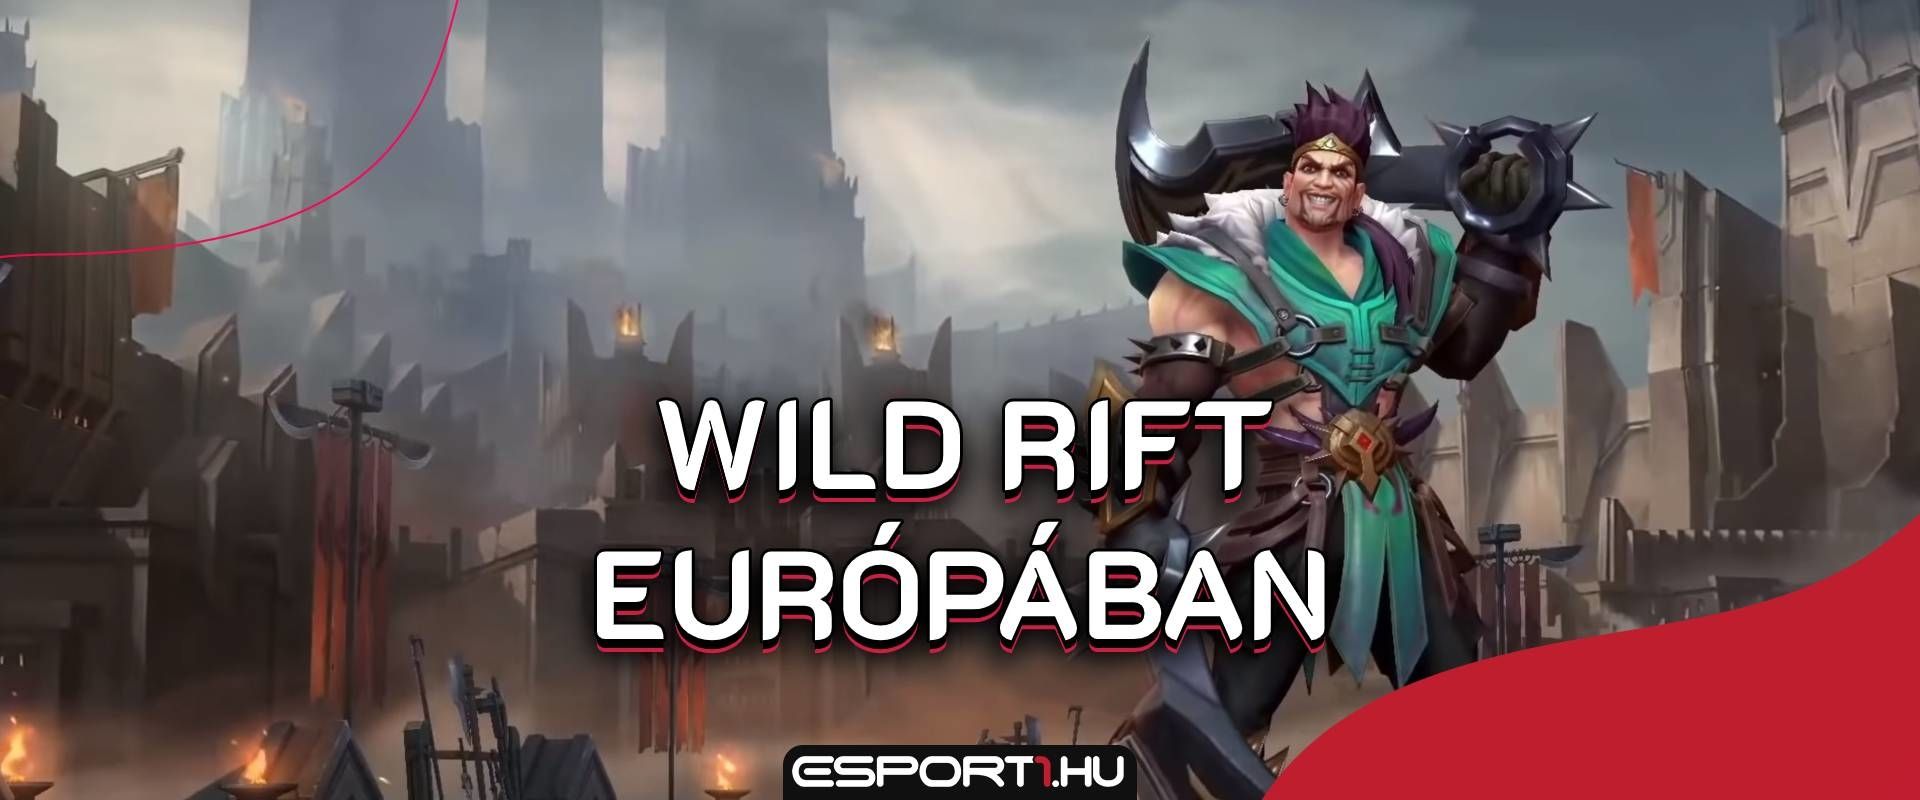 Megvan az időpont, még idén kipróbálhatják az európai játékosok a Wild Riftet